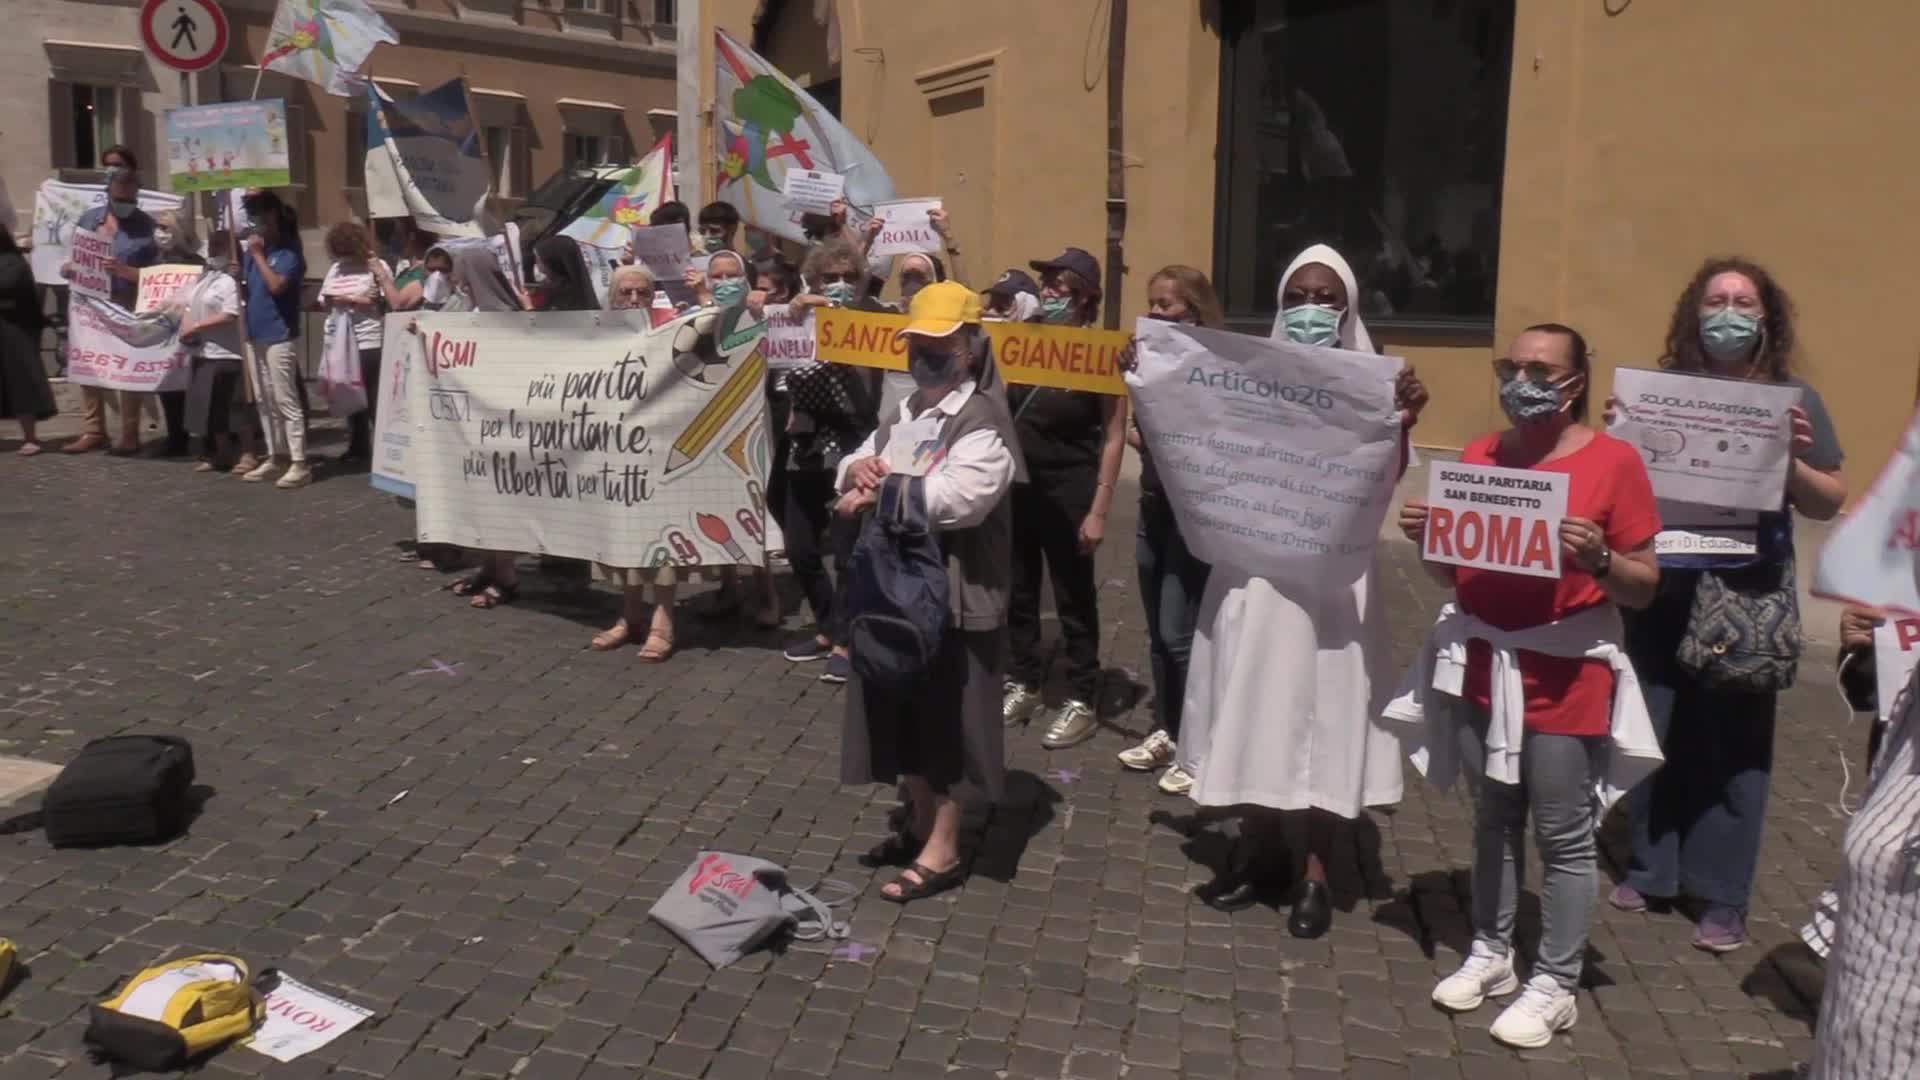 Scuola, flashmob paritarie a Montecitorio: "Chiediamo libera scelta"